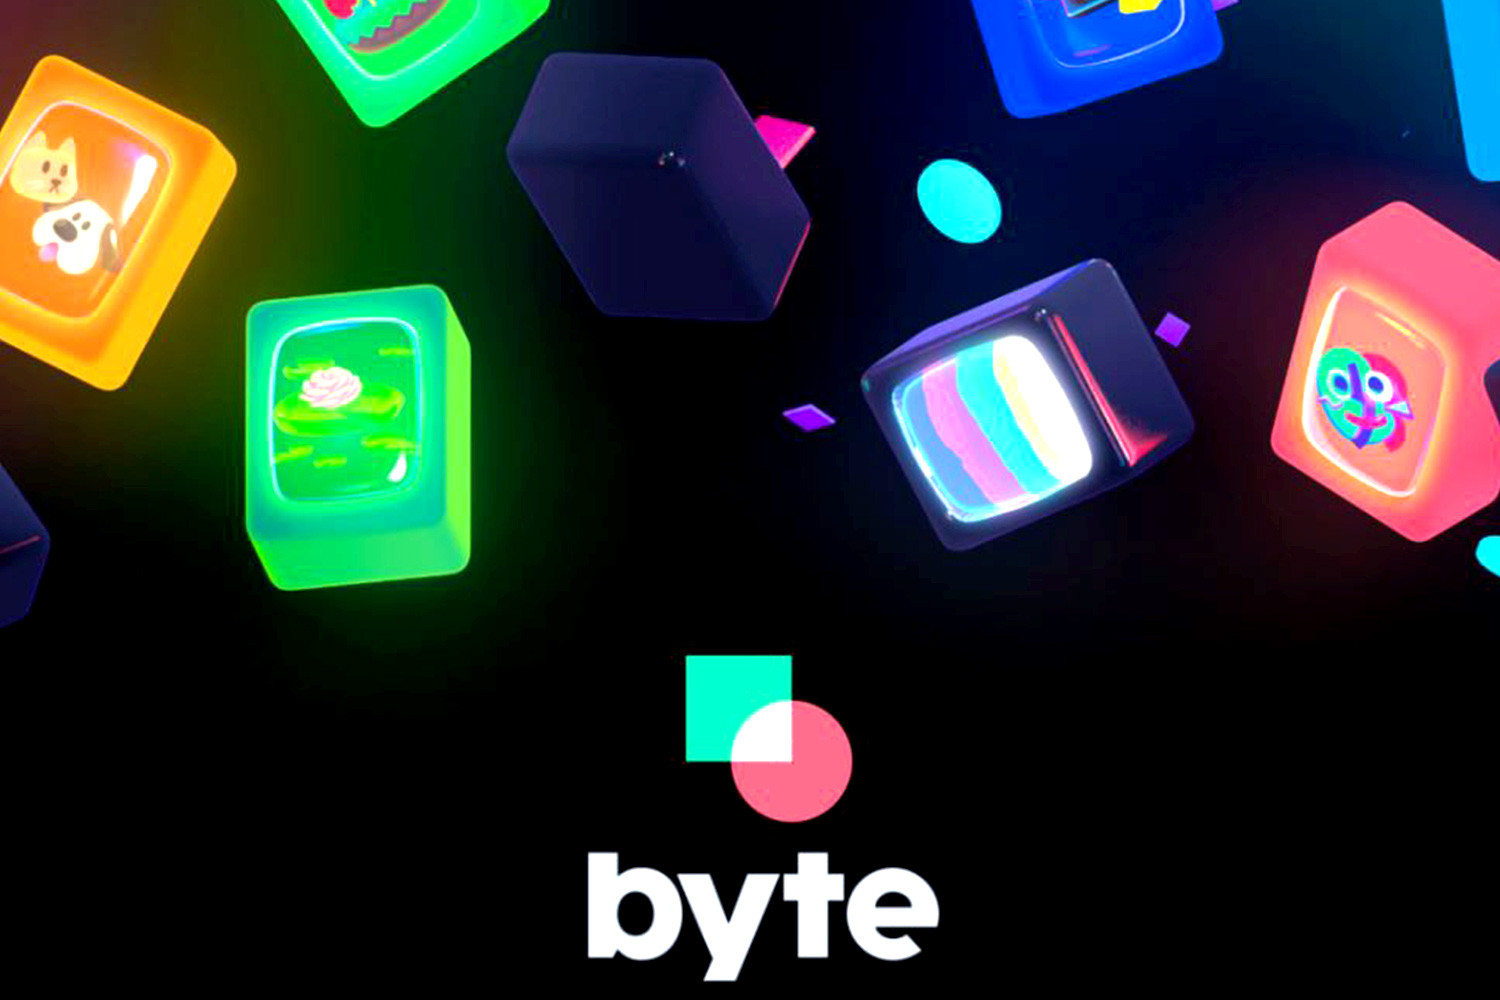   Byte là một ứng dụng mới được thiết kế để thay thế khoảng trống còn lại của Vine